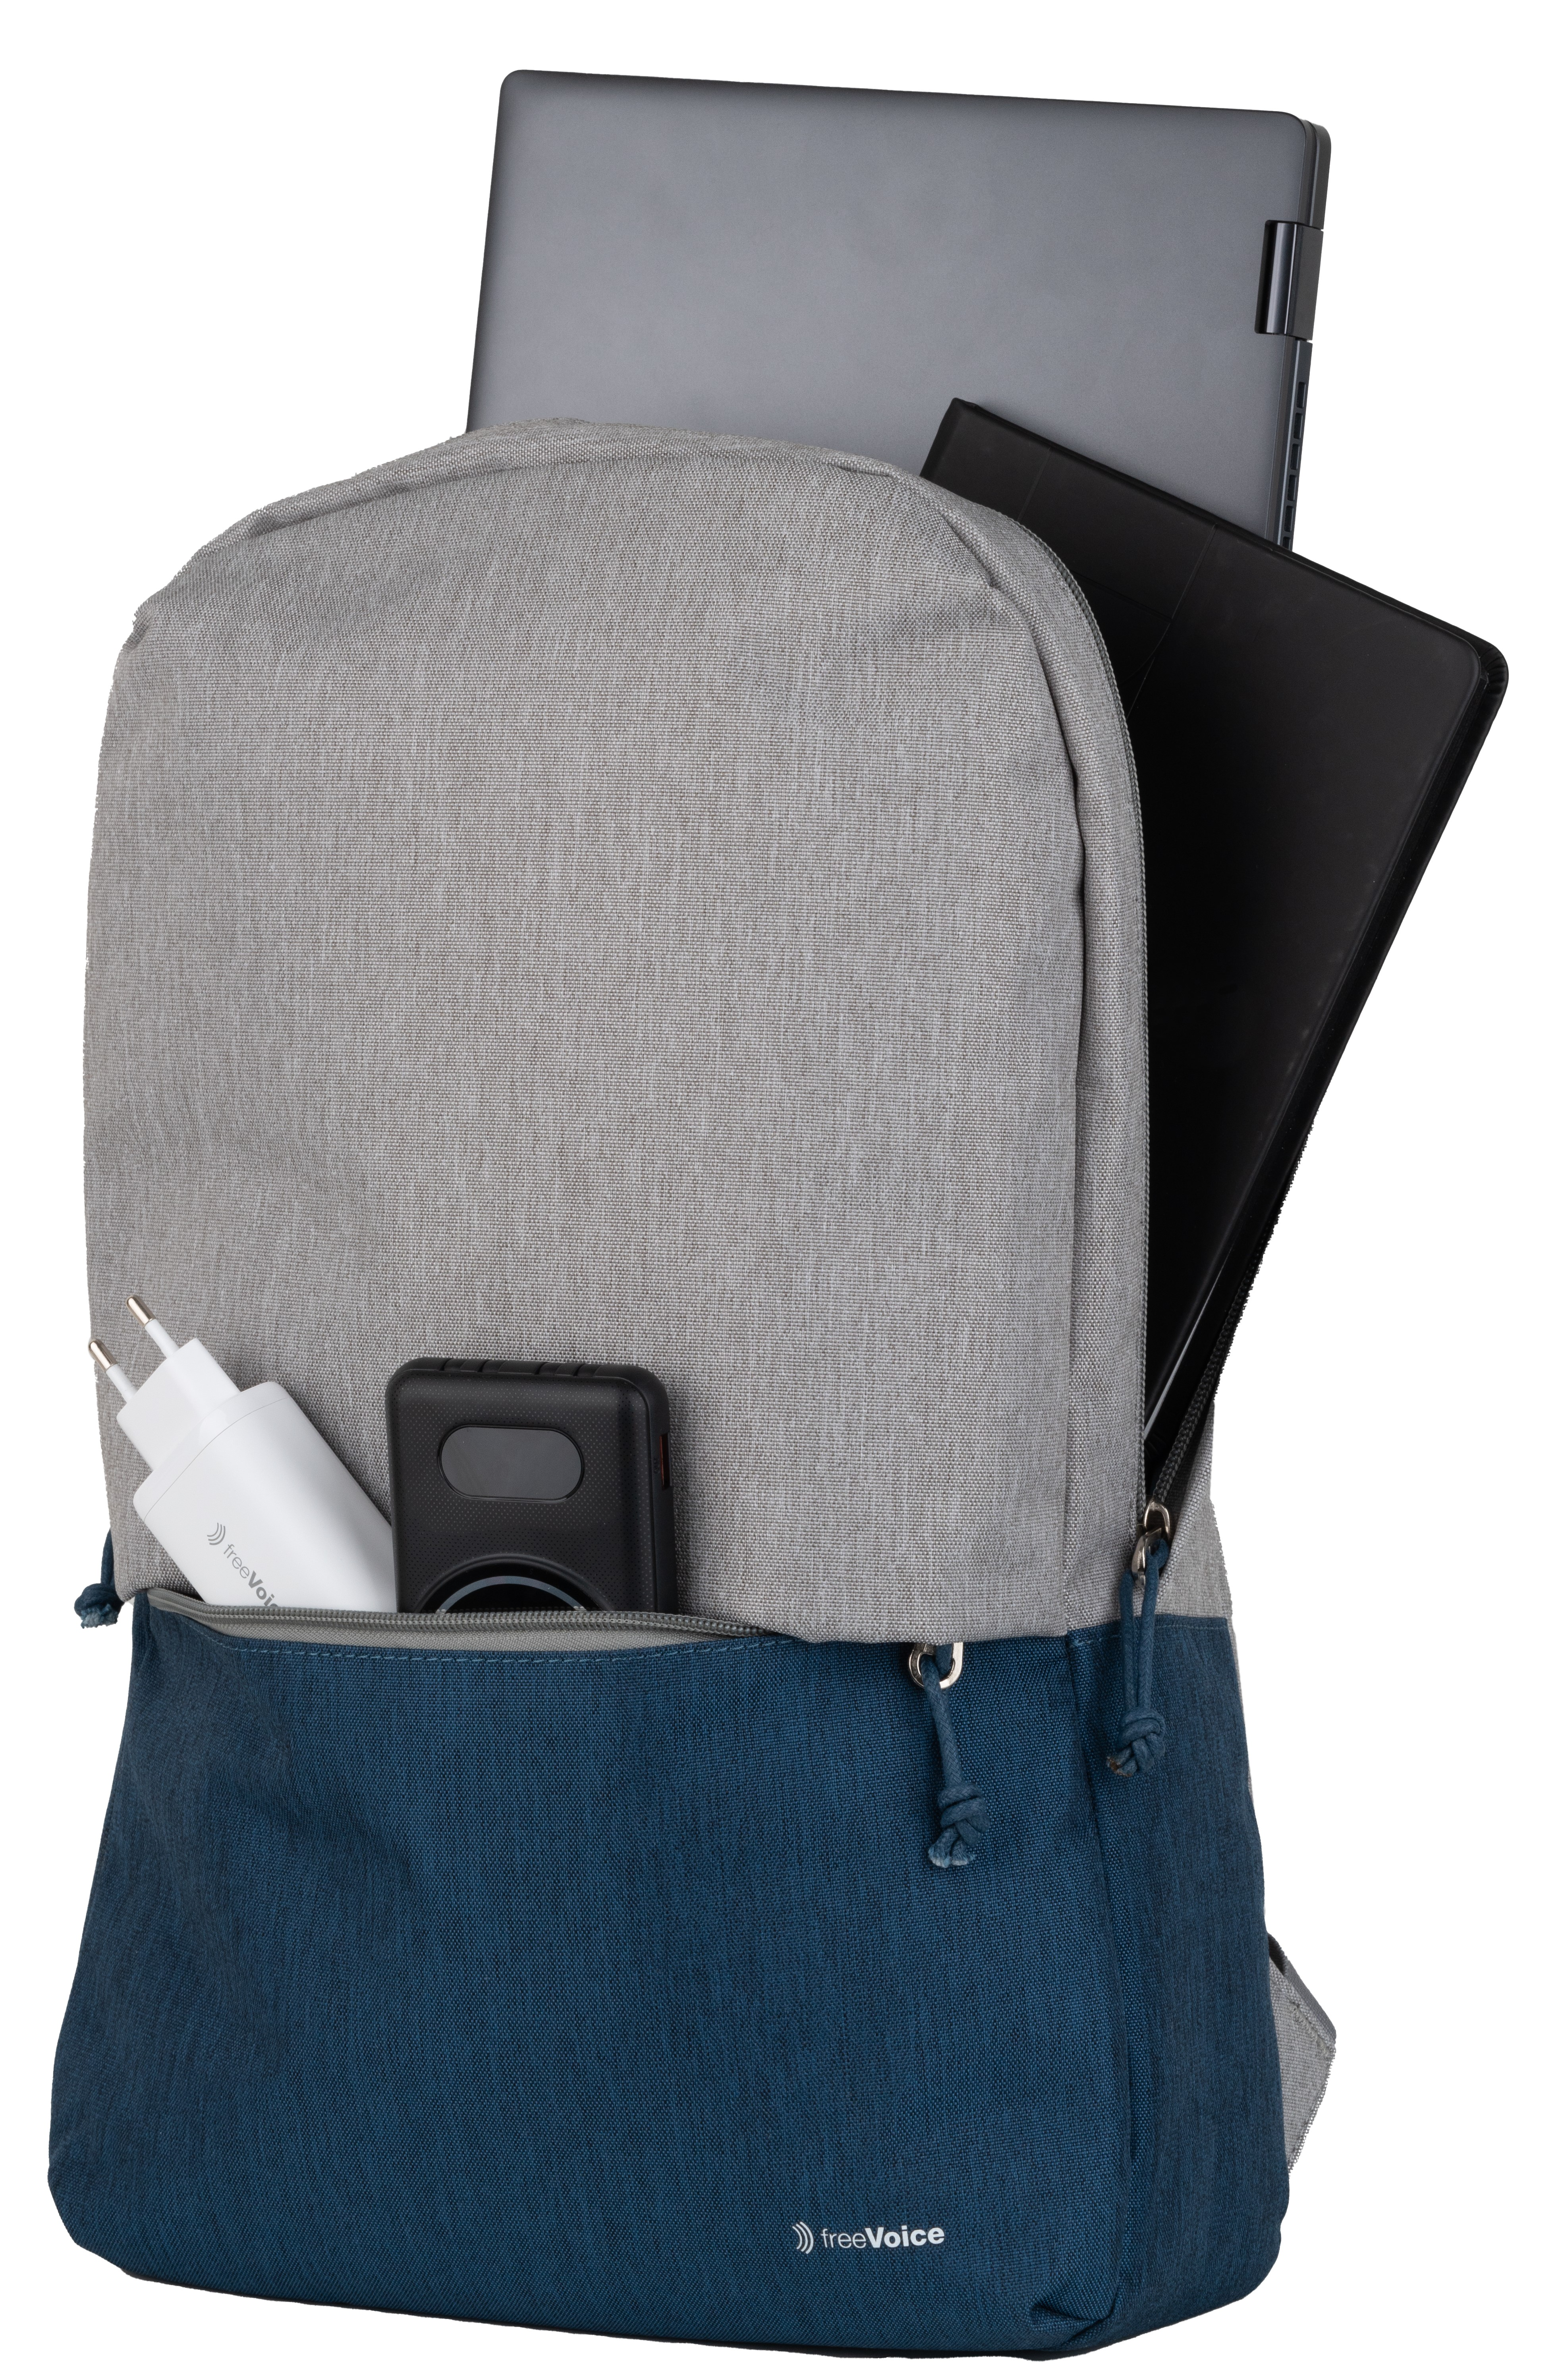 Grau, Universal FREEVOICE Rucksack für Umhängetasche Blau Urban Laptop Polyester,